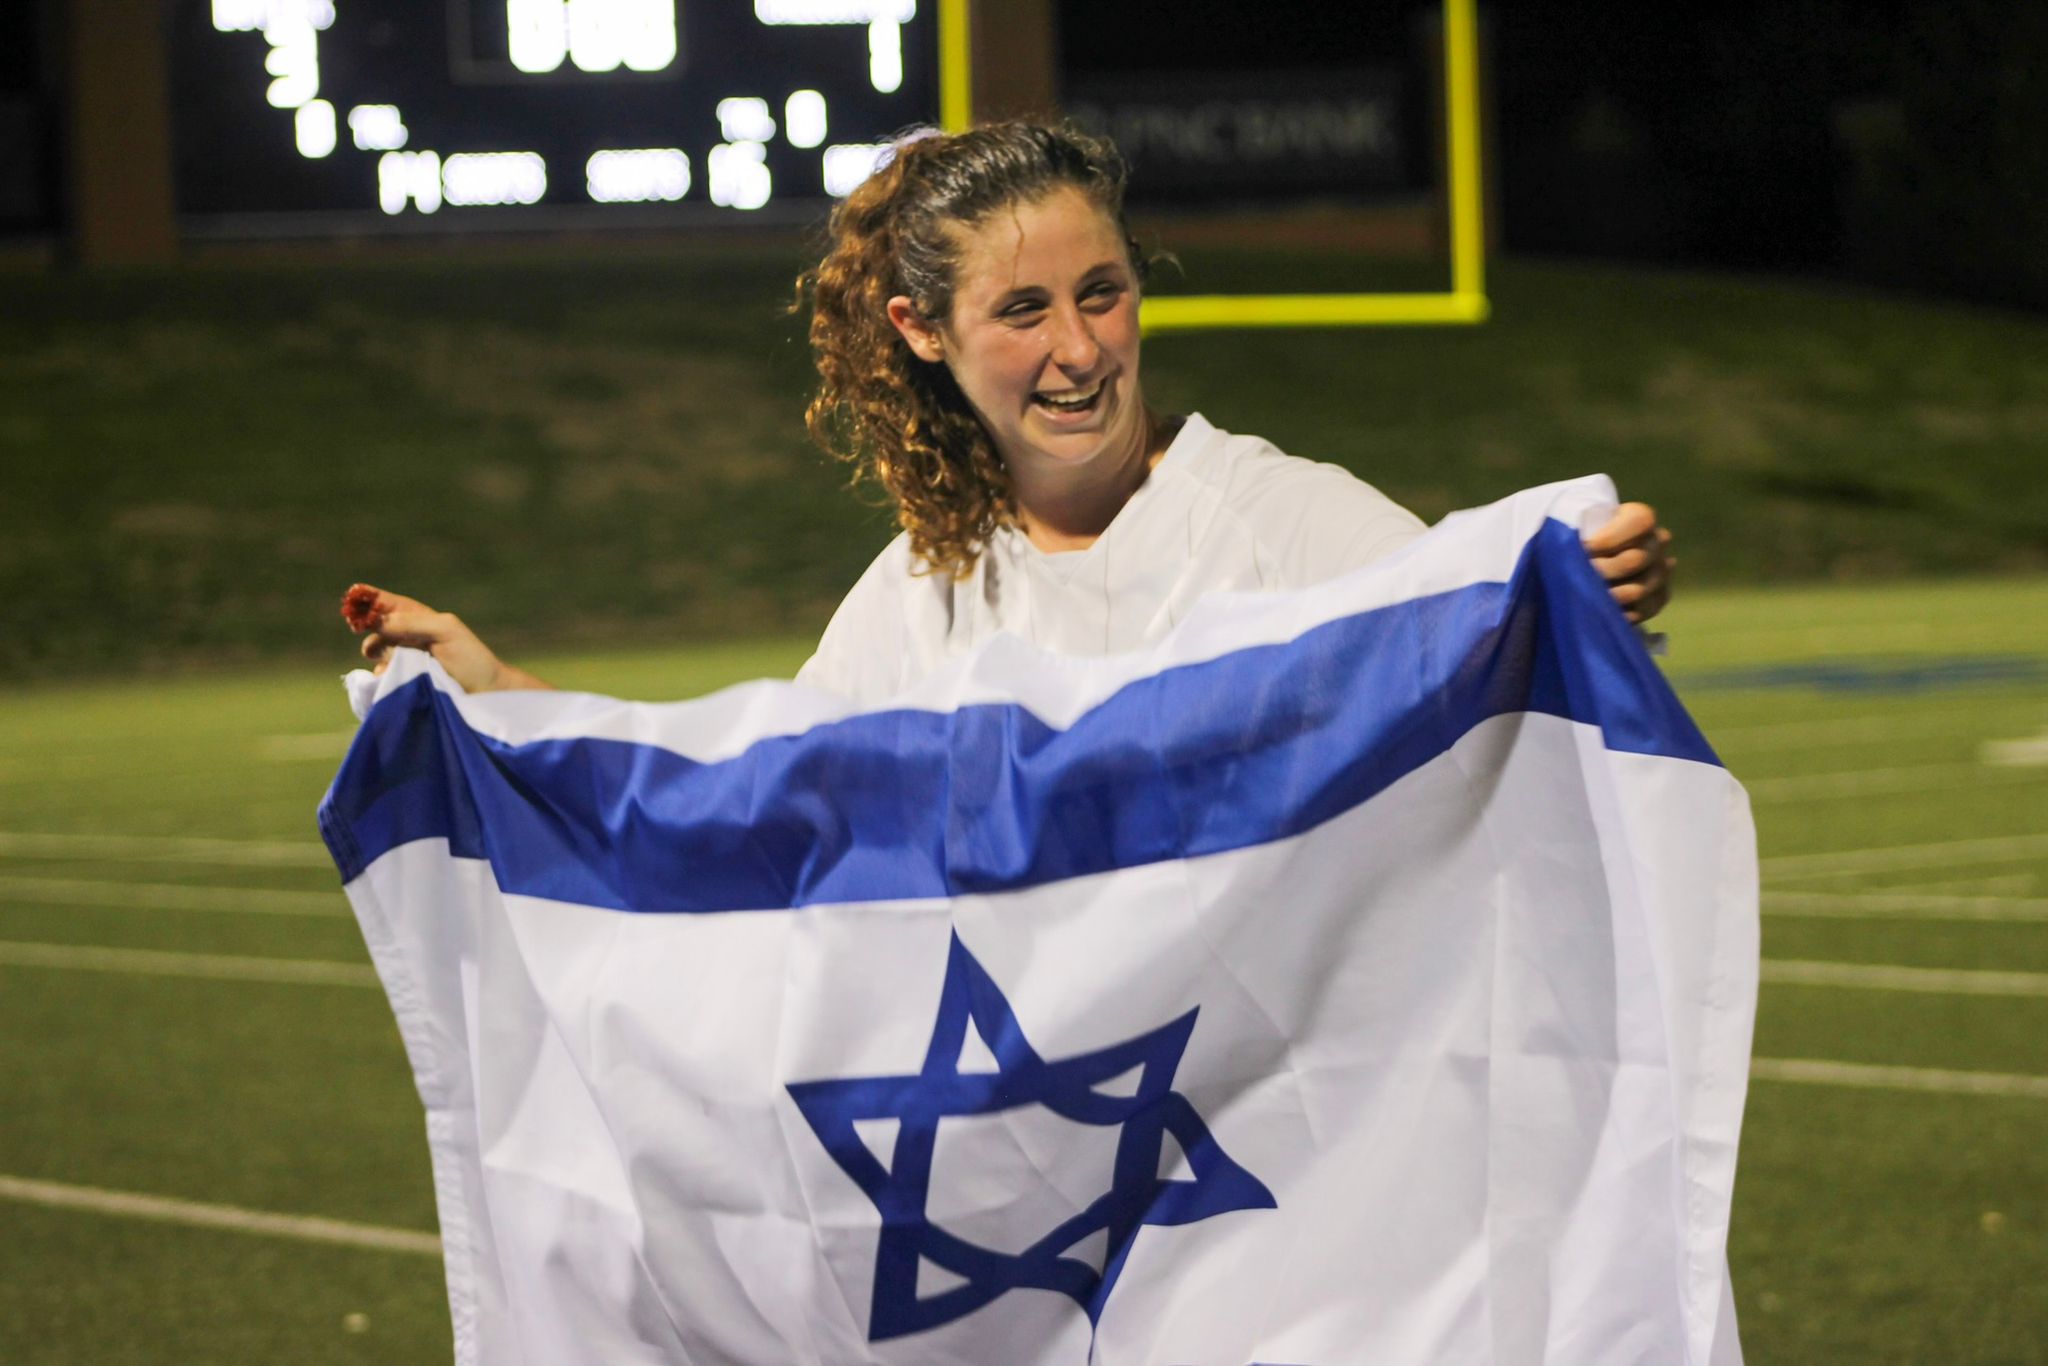 טליה זומר במדי אוניברסיטת באטלר, מניפה את דגל ישראל. &quot;בכל משחק מה-7 באוקטובר אני עולה למגרש במטרה לשחק הכי טוב שאני יכולה&quot; (צילום: Delaney Hudson)